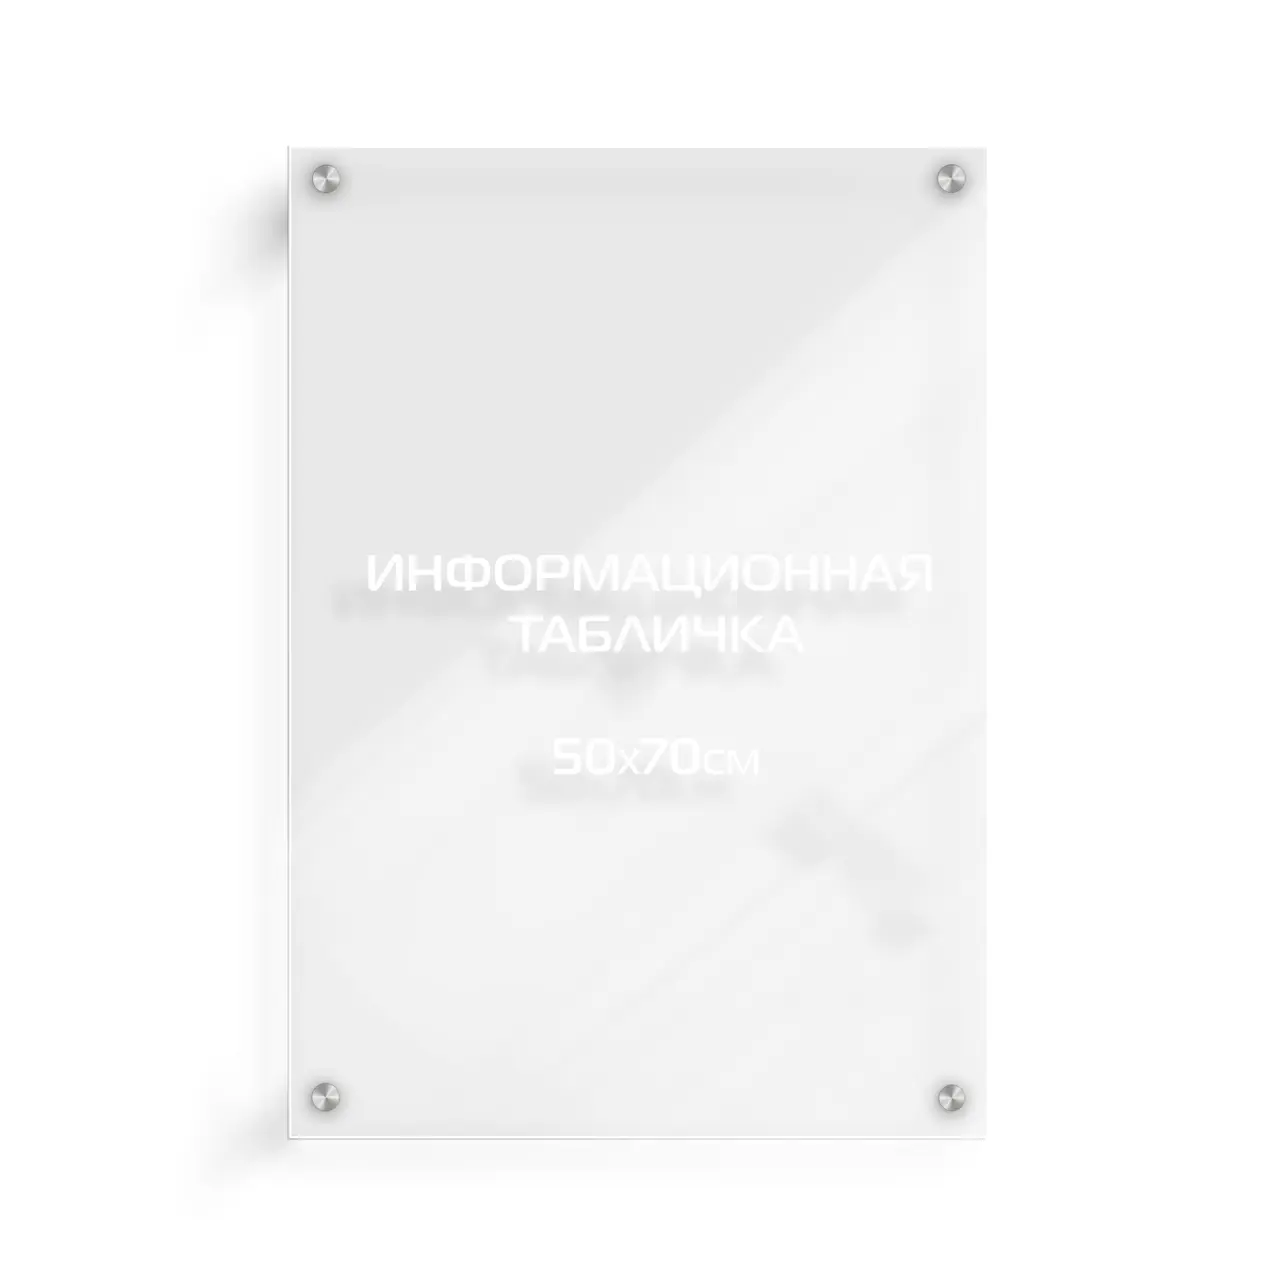 Информационная табличка из оргстекла 70х50 см (с белой аппликацией) на дистанционных держателях